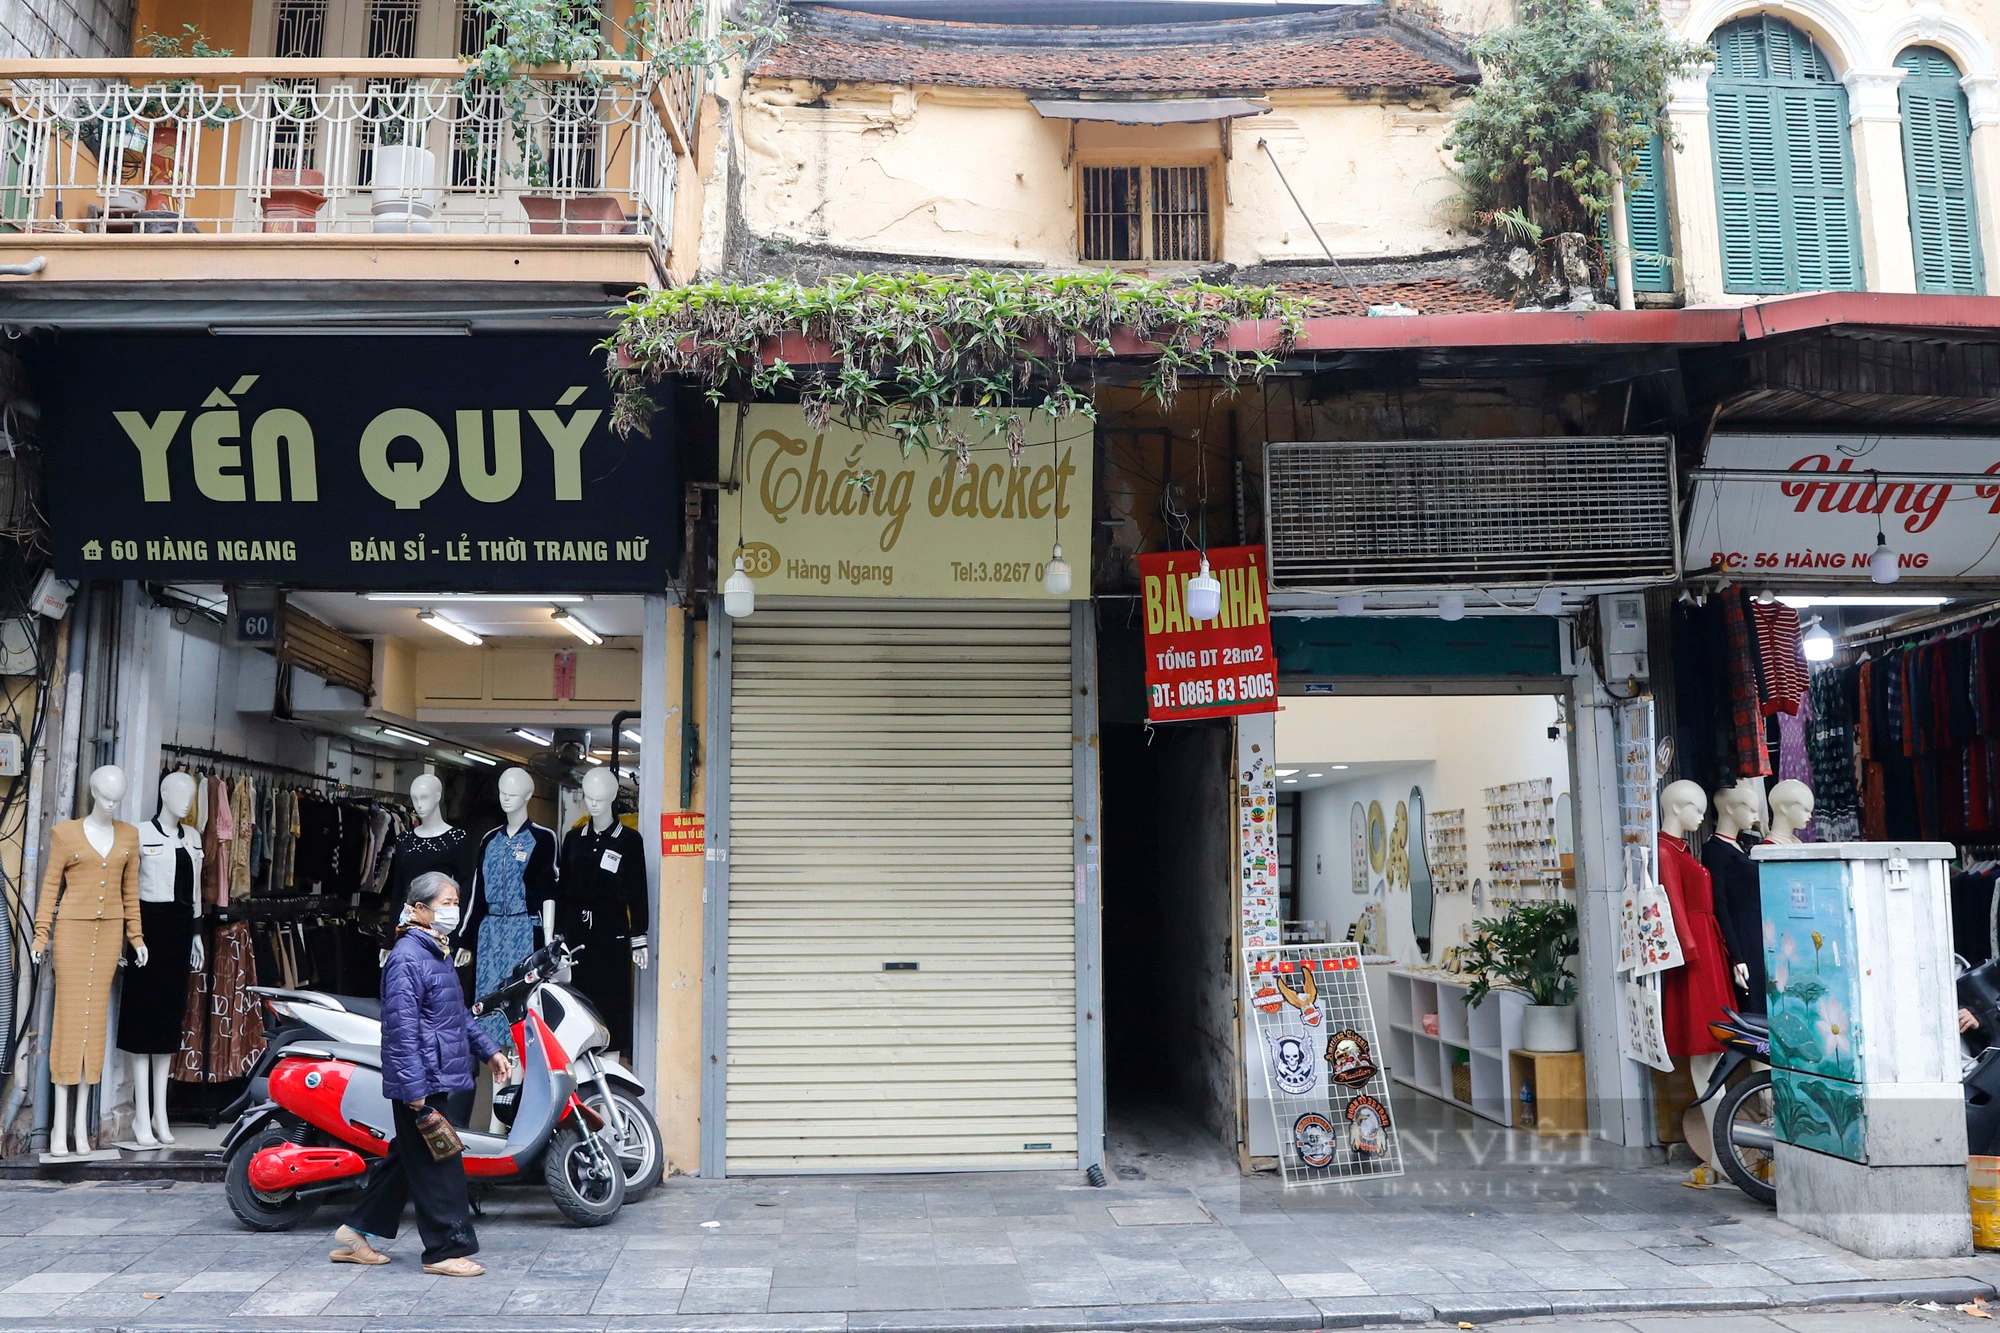 Nhà phố cổ Hà Nội giảm giá 50% nhưng vẫn đỏ mắt tìm người mua - Ảnh 10.